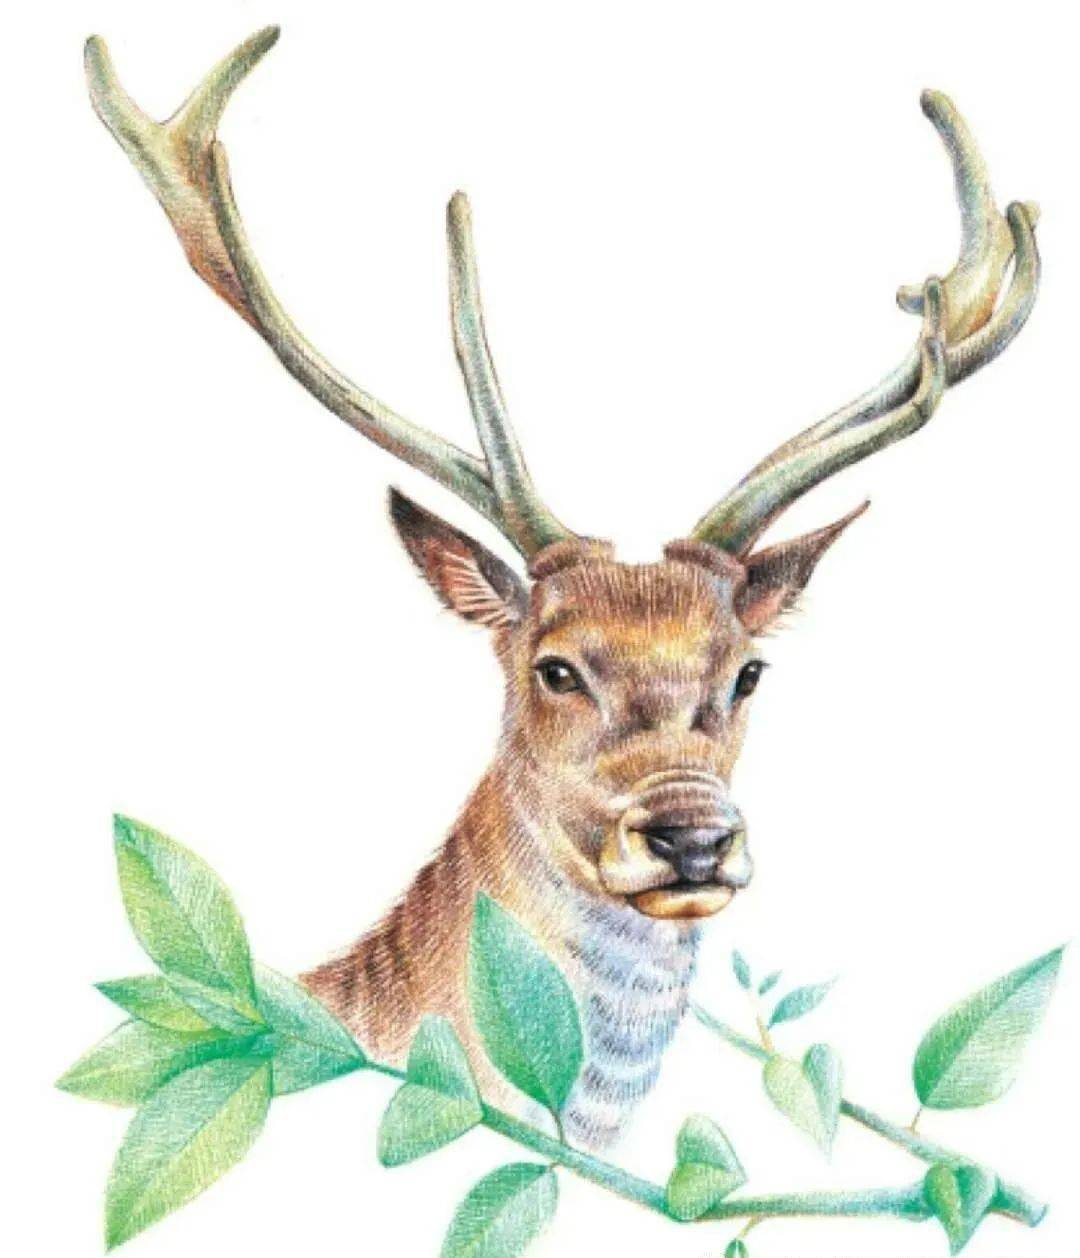 彩铅手绘| 灵动清新的驯鹿,彩色铅笔动物画教程